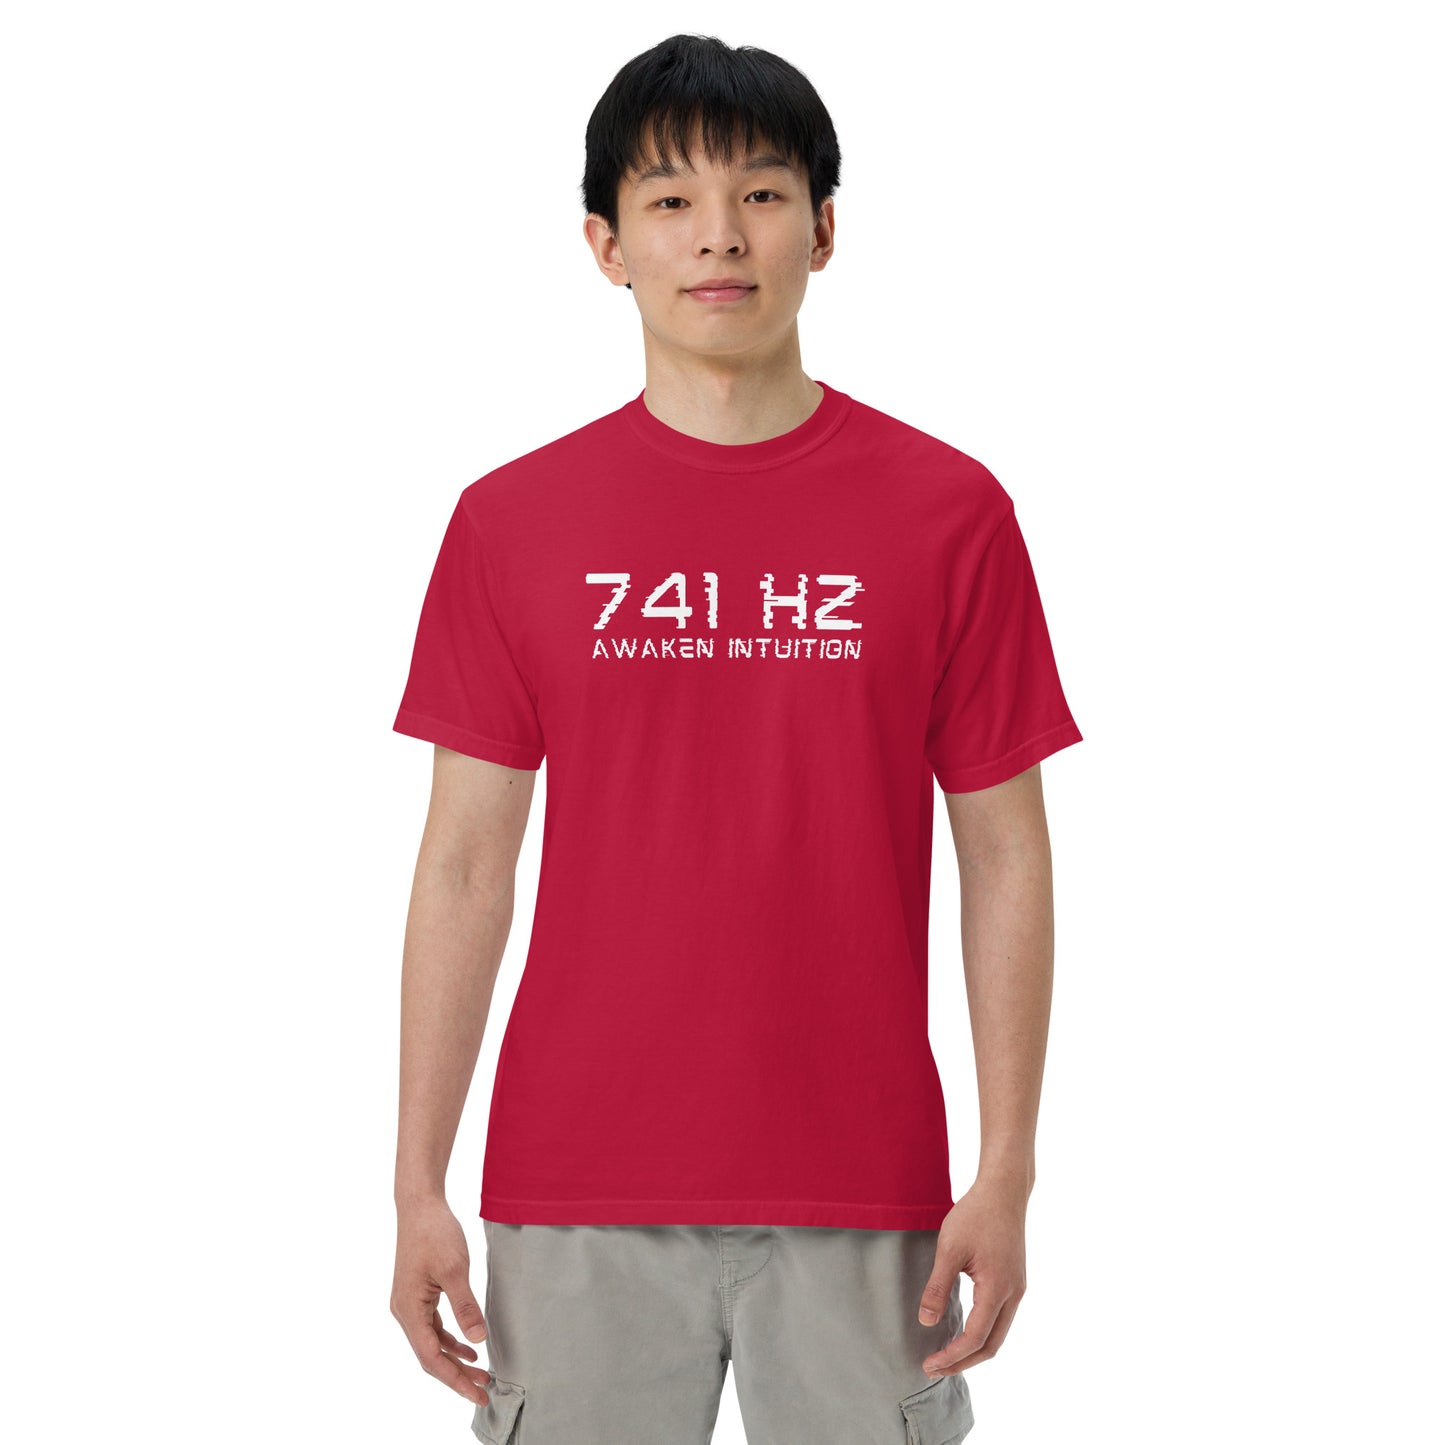 741 Hz Awaken Intuition Men’s garment-dyed heavyweight t-shirt